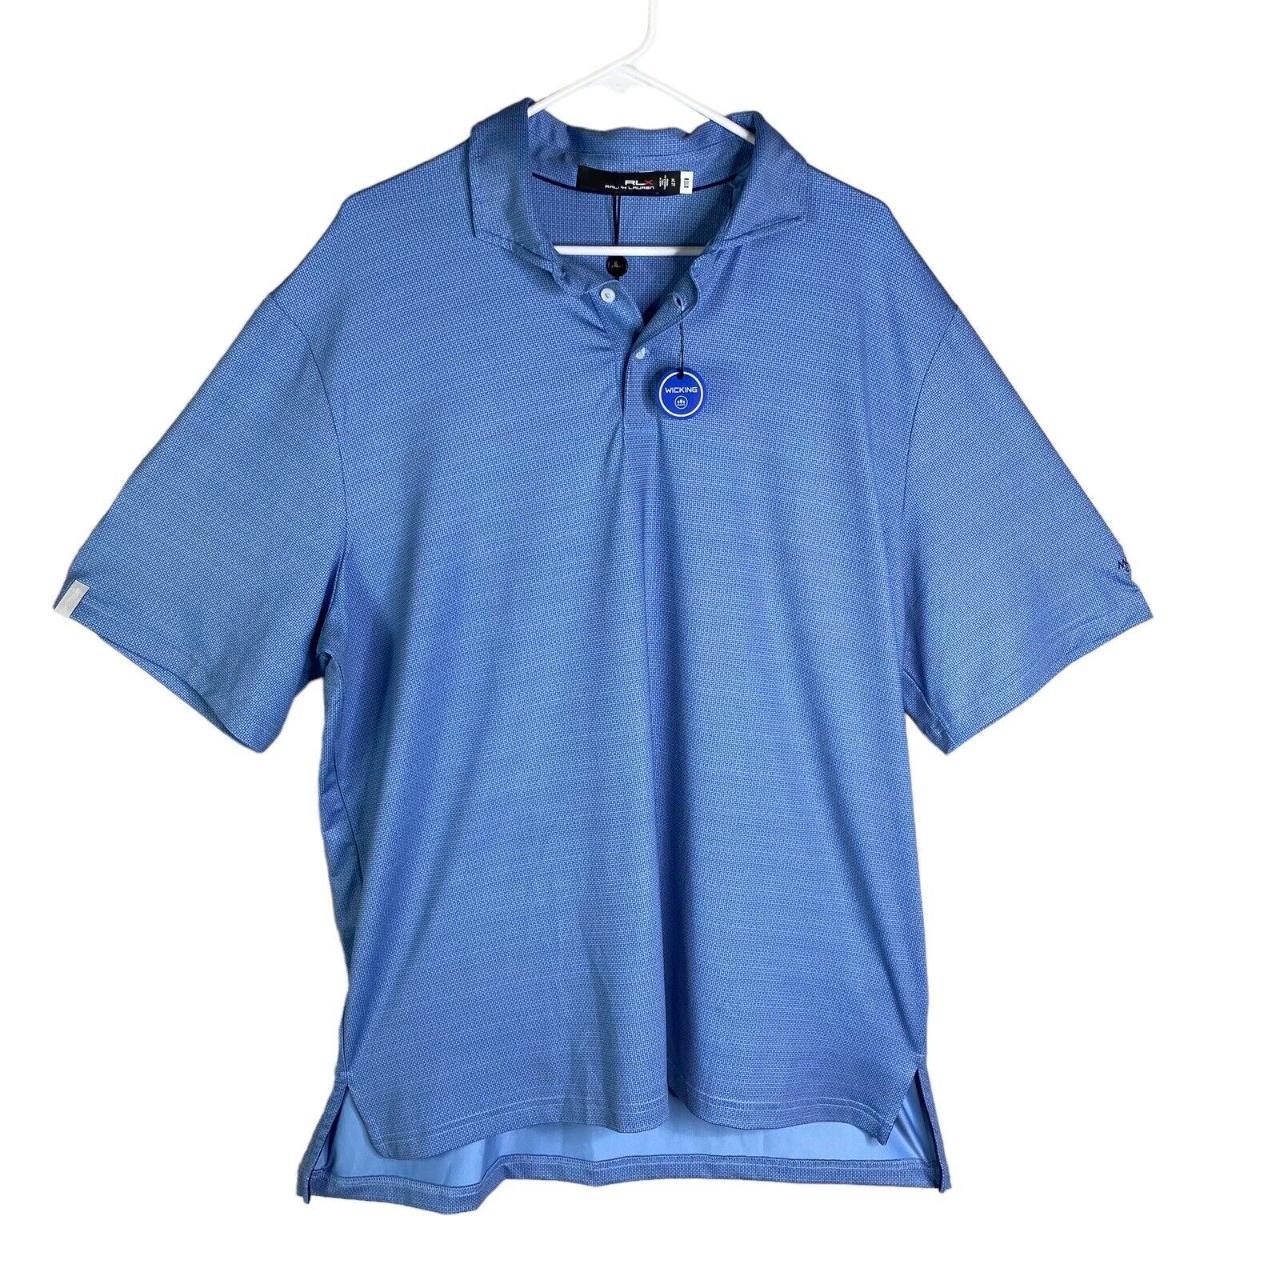 Polo Ralph Lauren RLX Polo Shirt XL Blue Lightweight... - Depop